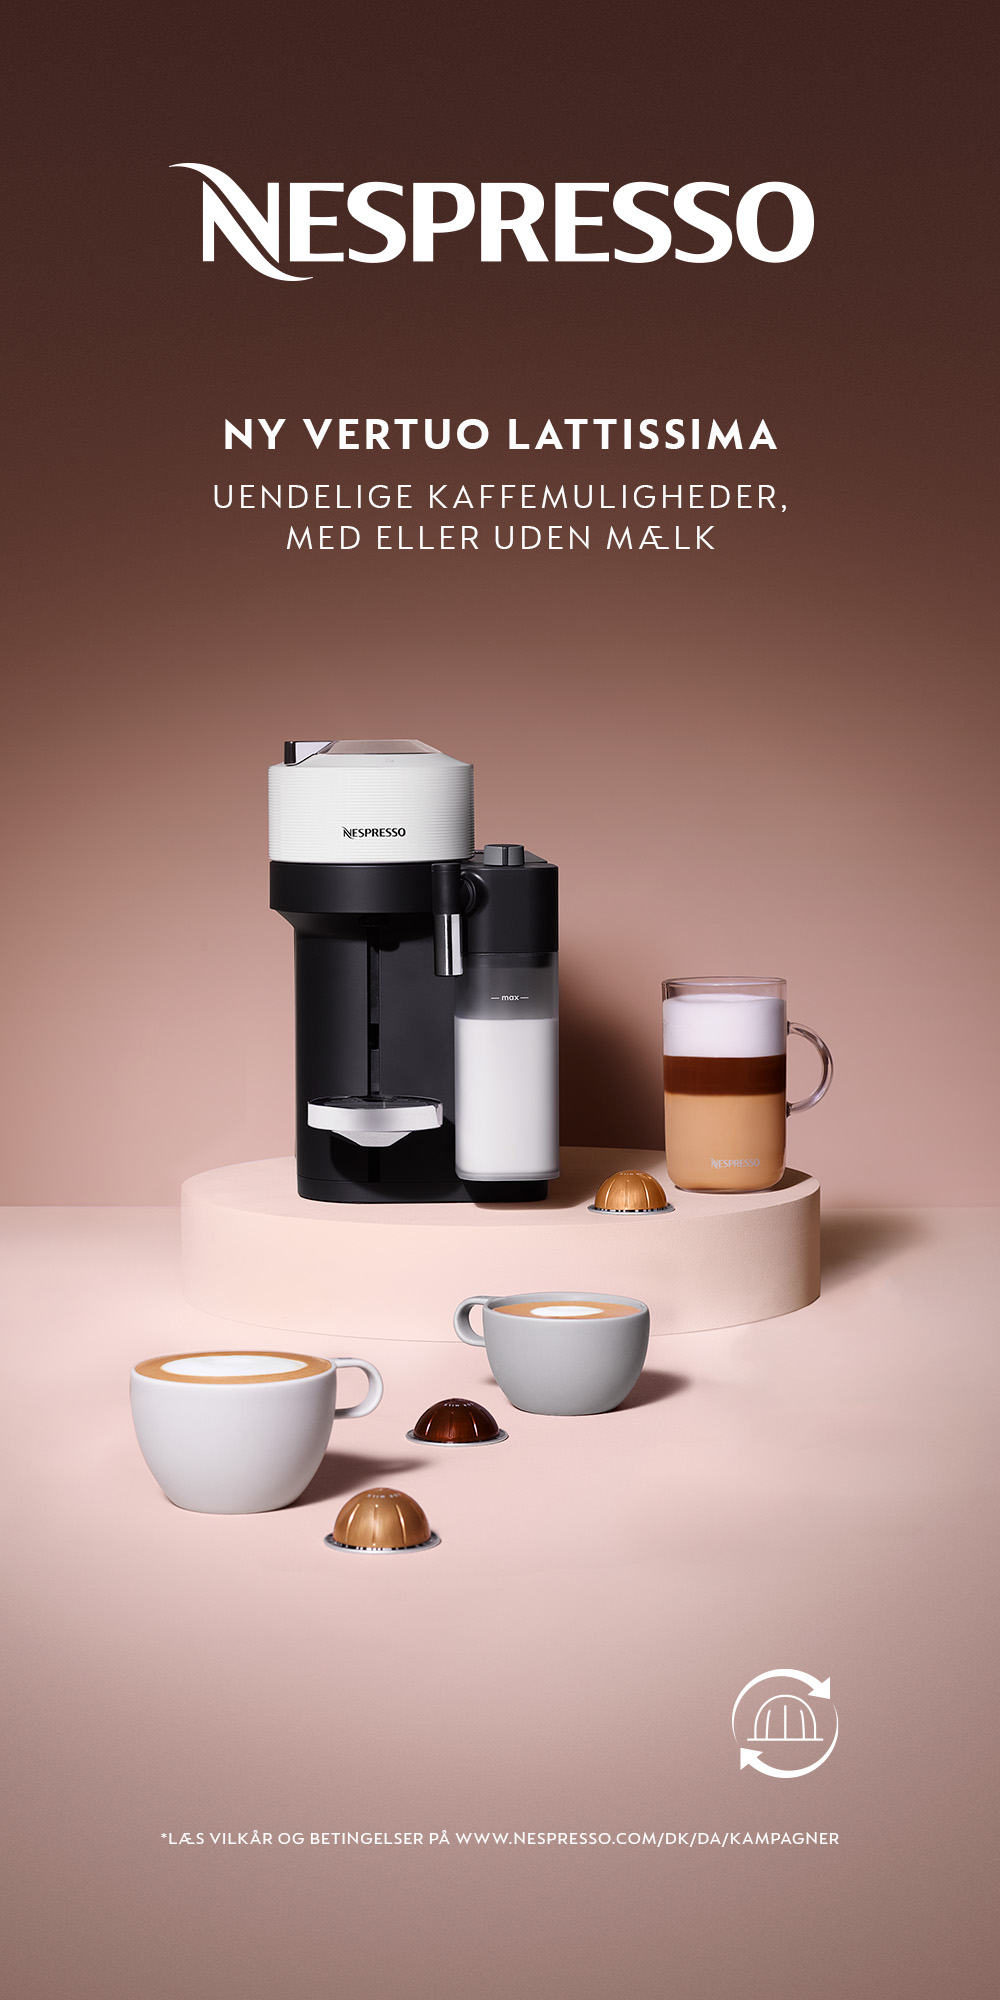 Nespresso Kaffemaskiner | Find alt til din på Magasin.dk